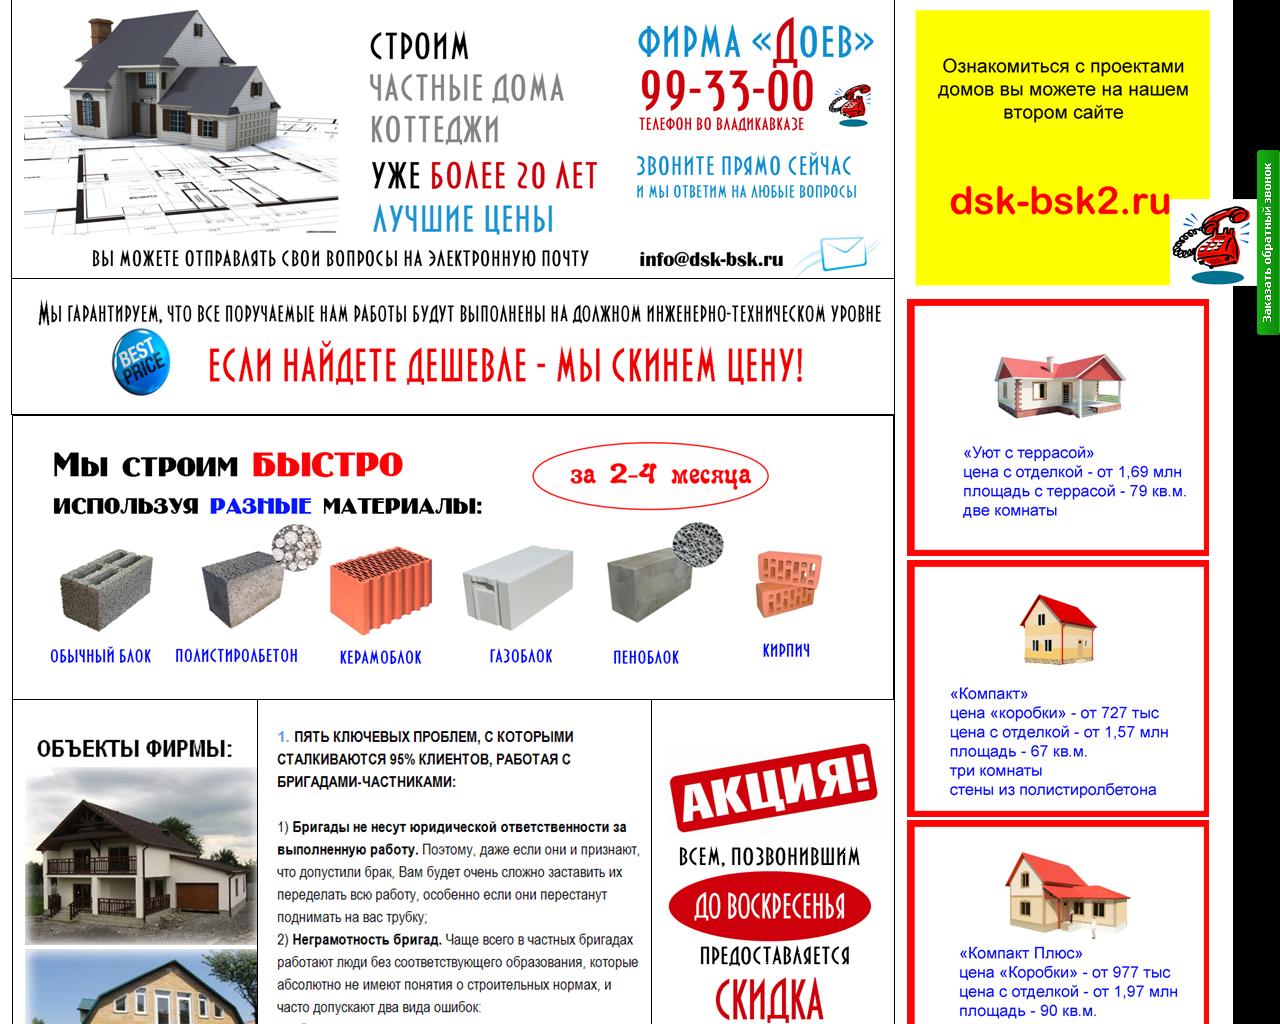 Изображение сайта dsk-bsk.ru в разрешении 1280x1024